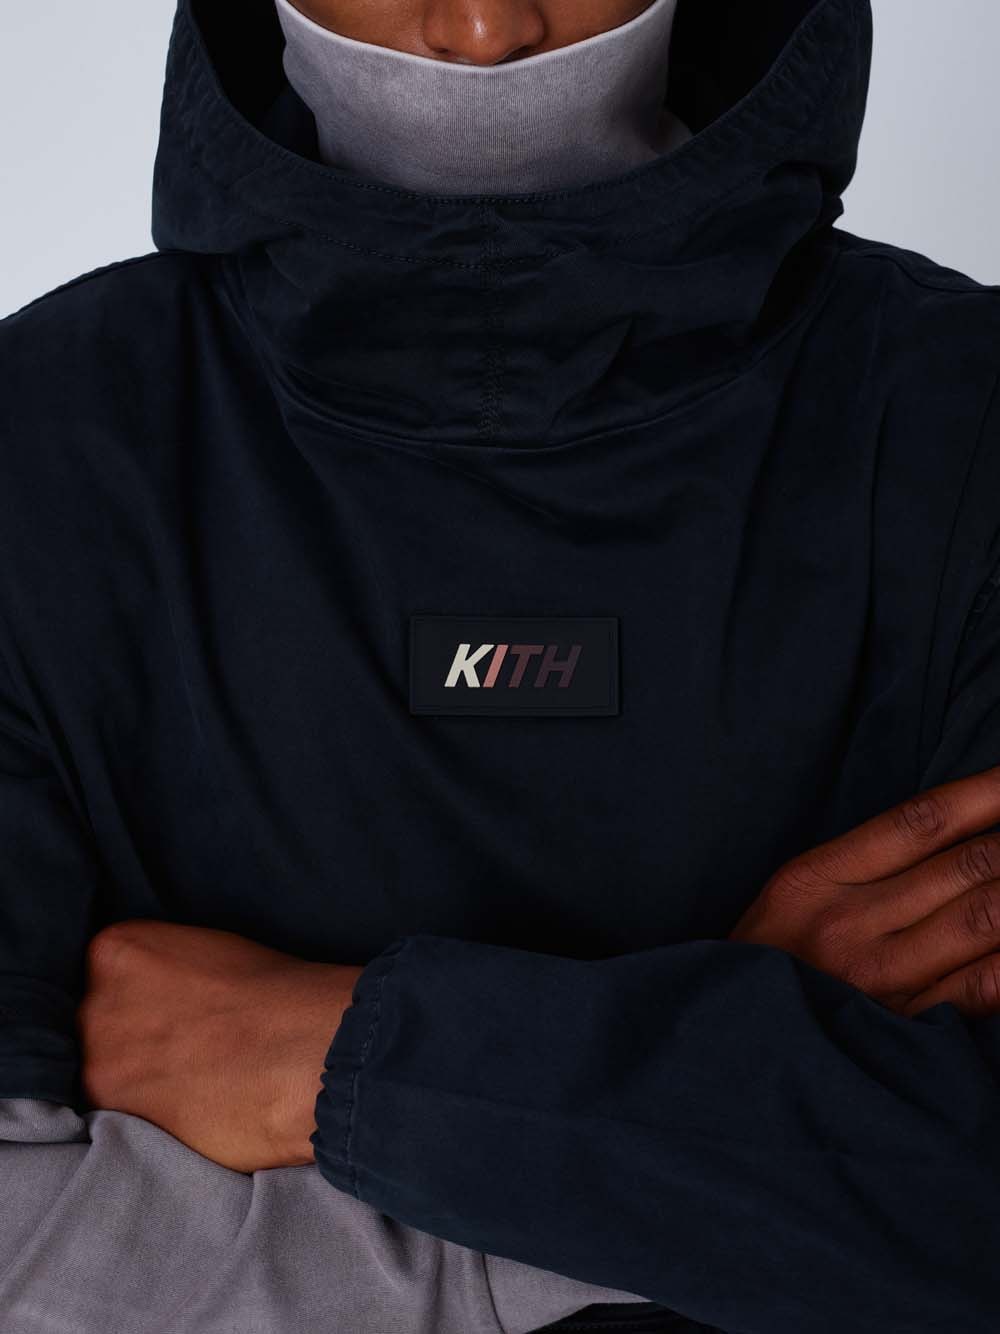 KITH Fall 2019 Lookbook Preview Ronnie Fieg new balance jackets hoodies Stutterheim